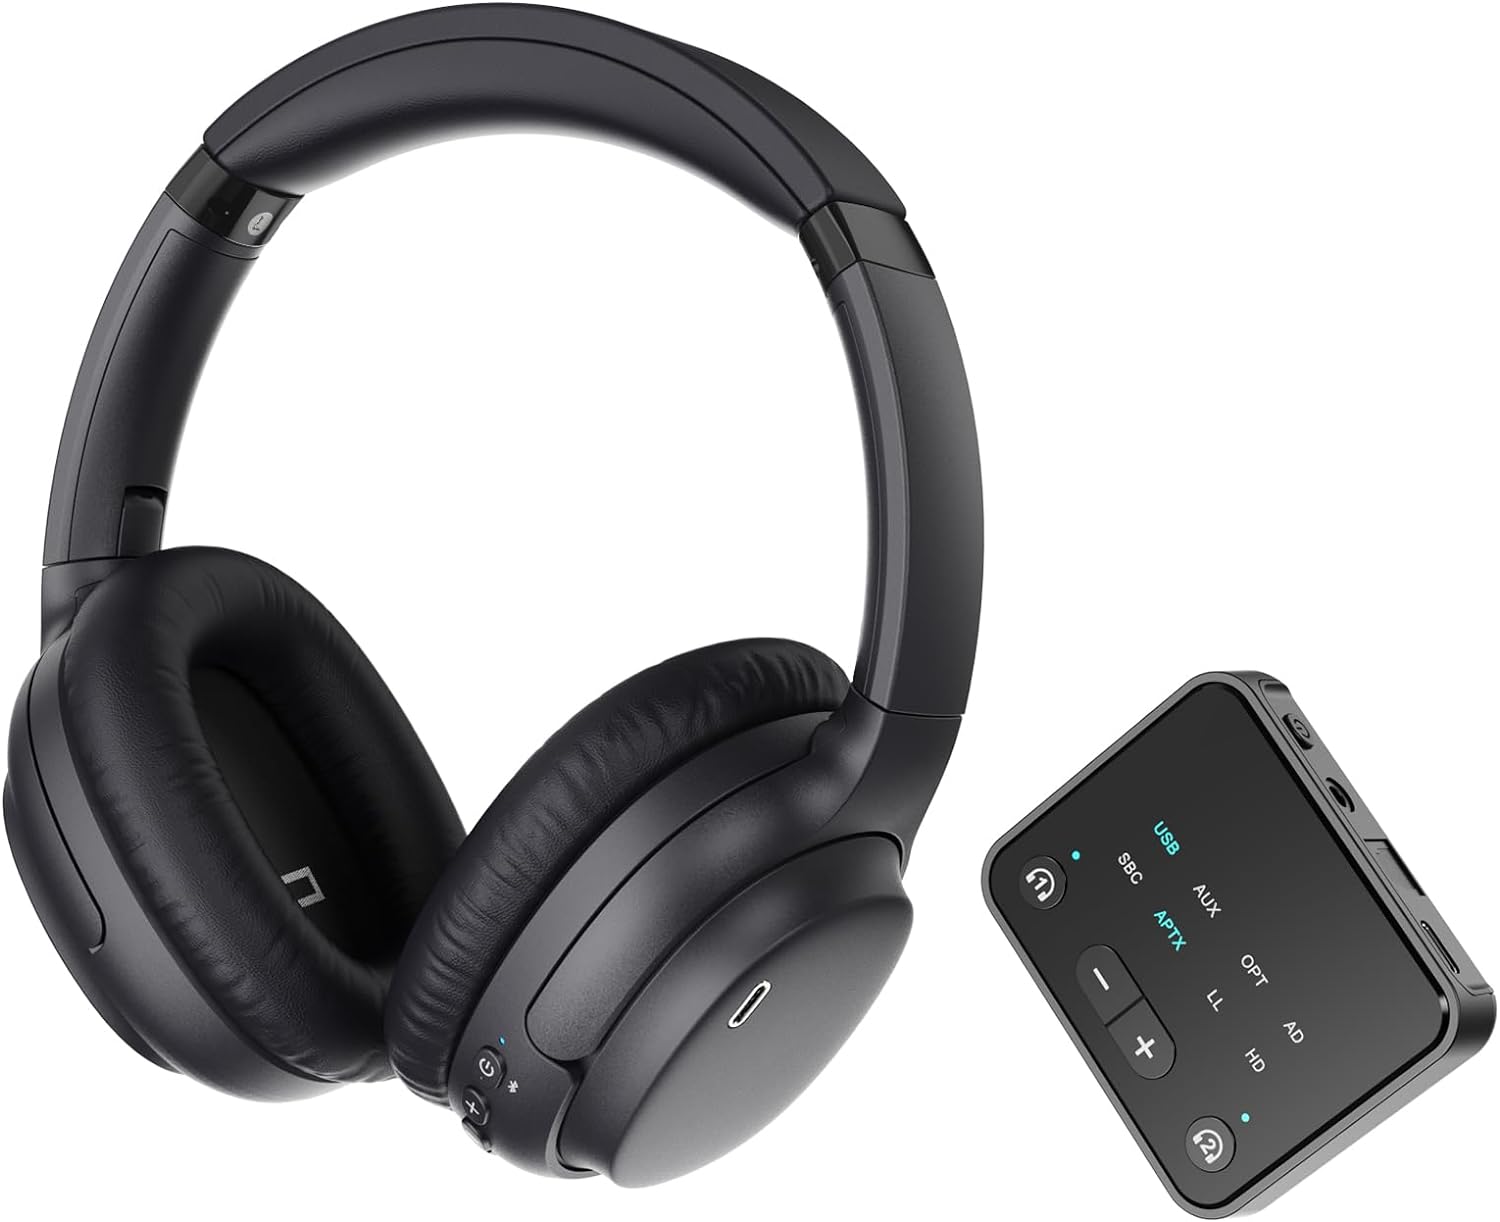 Soundodo Bluetooth Headphones Review: Enhance Your TV Experience